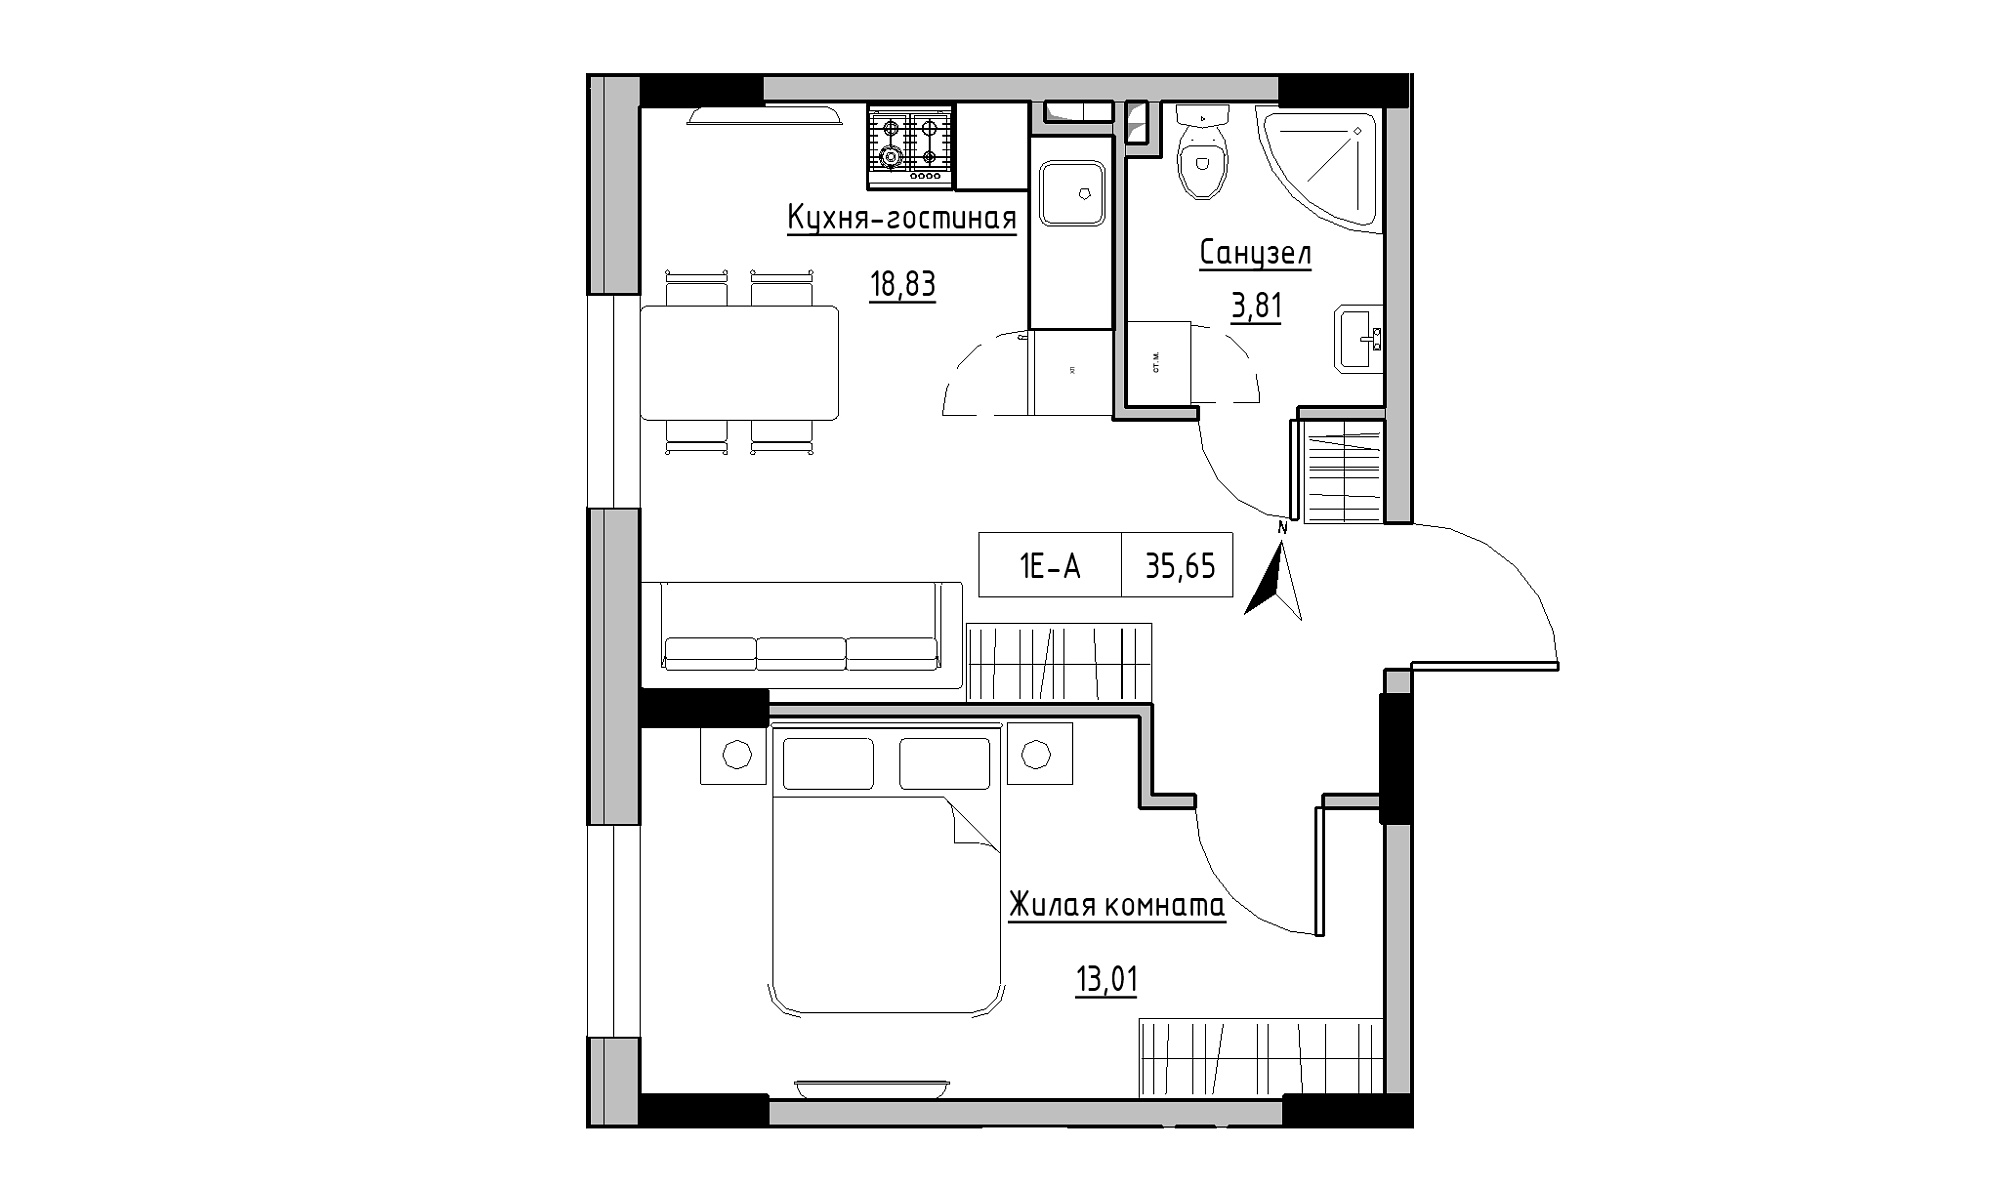 Планування 1-к квартира площею 35.65м2, KS-025-01/0004.